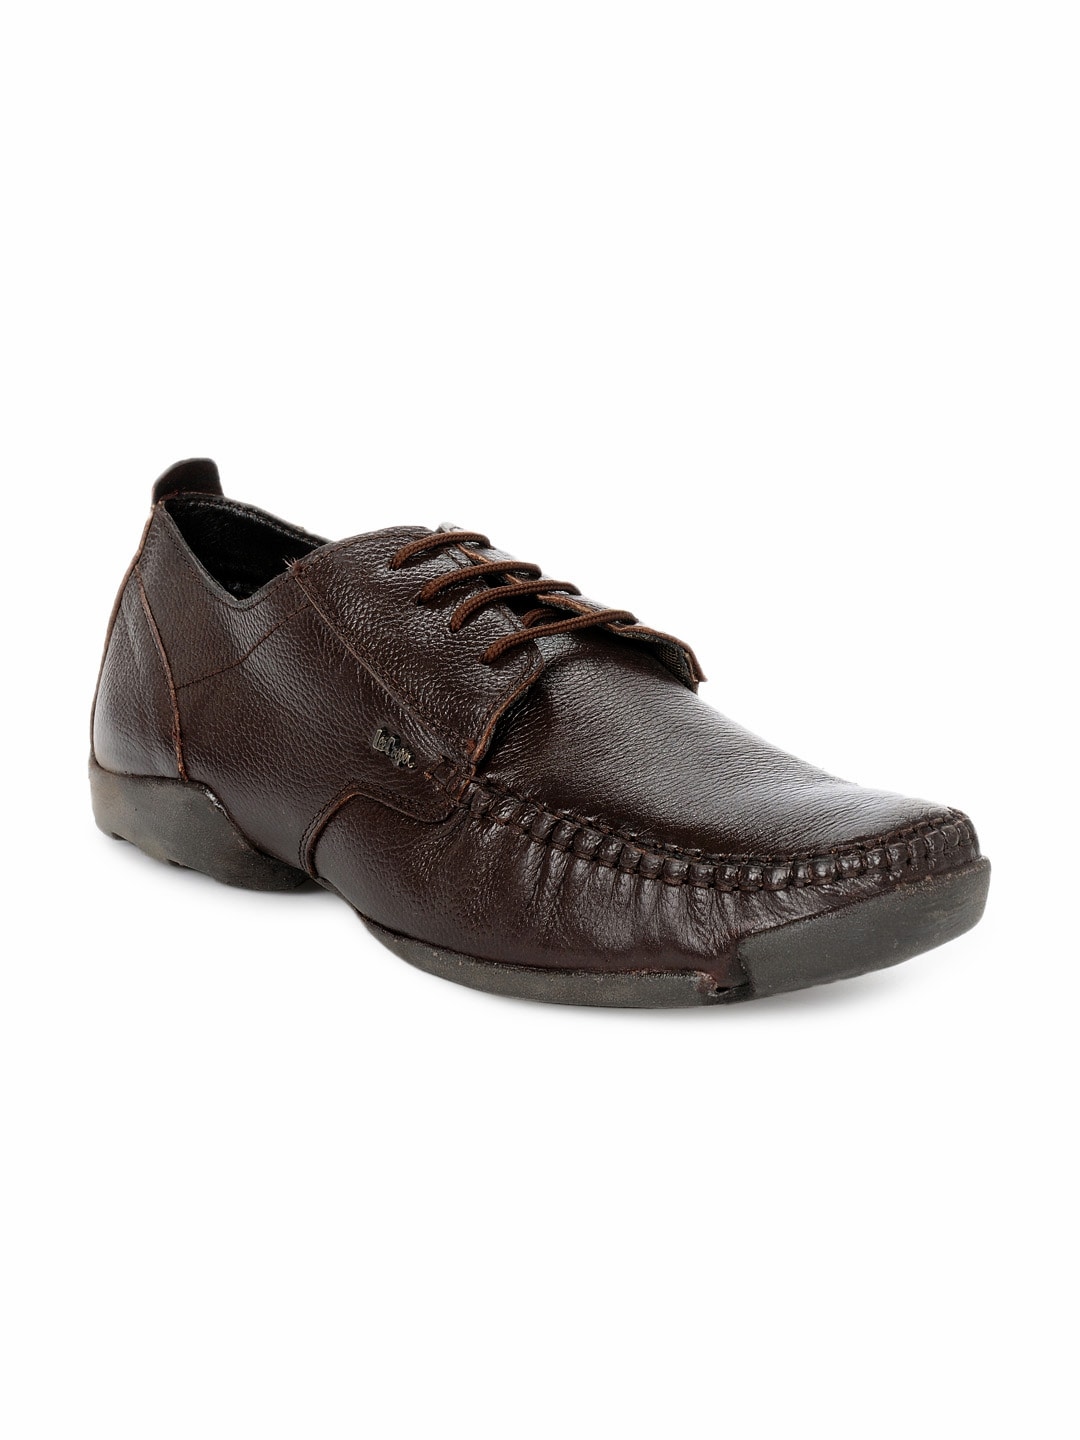 Lee Cooper Men Brown Formal Shoes